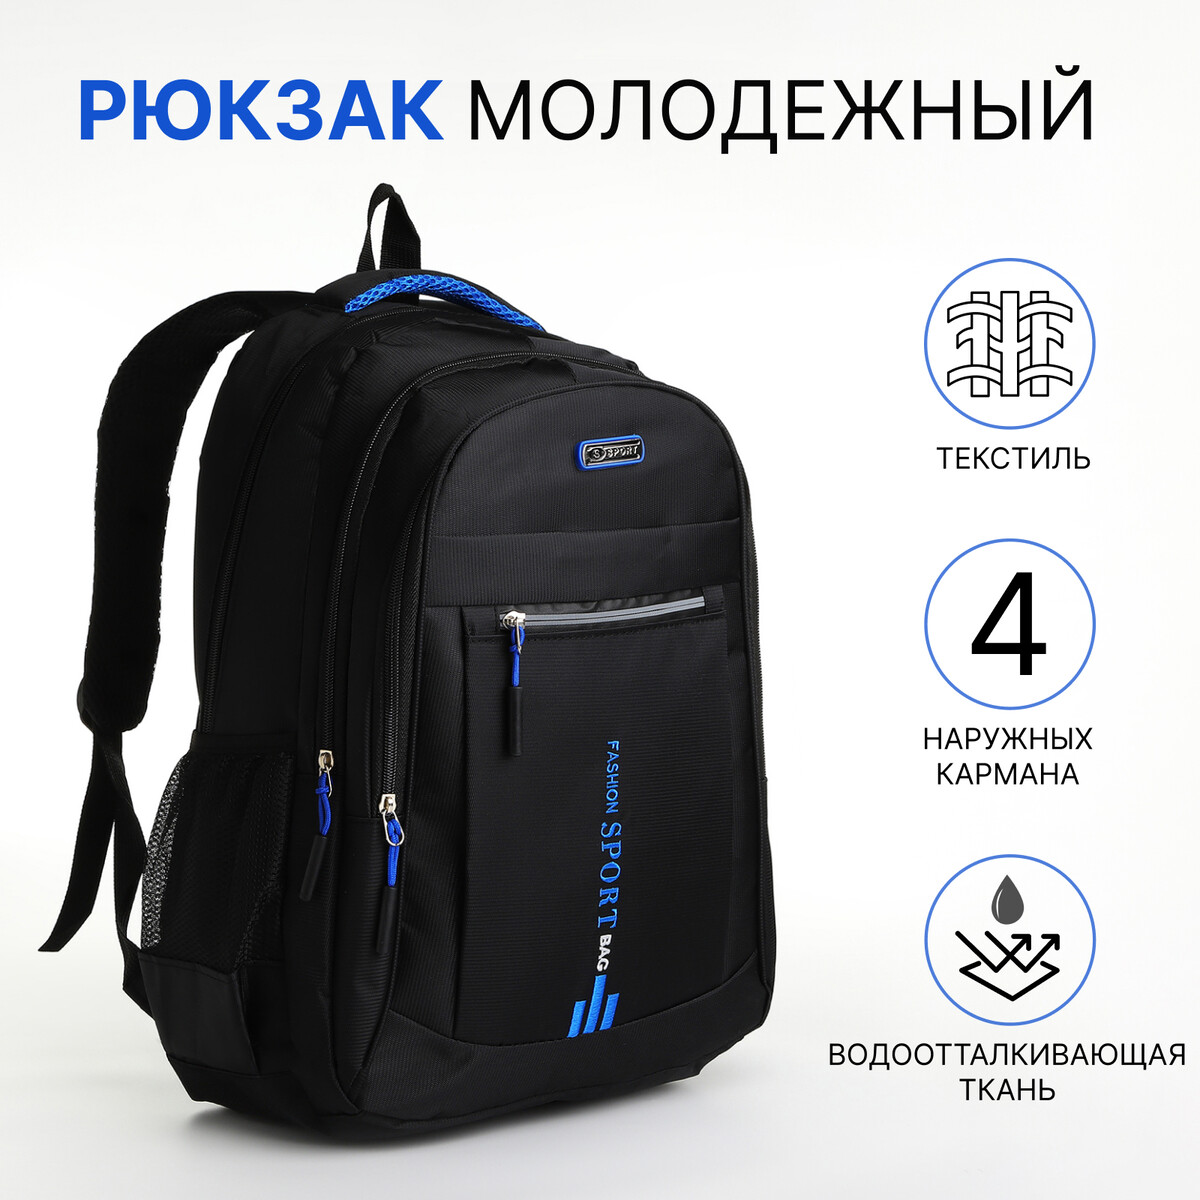 Рюкзак молодежный из текстиля на молнии, 4 кармана, цвет черный/синий рюкзак молодежный водонепроницаемый на молнии 3 кармана голубой синий